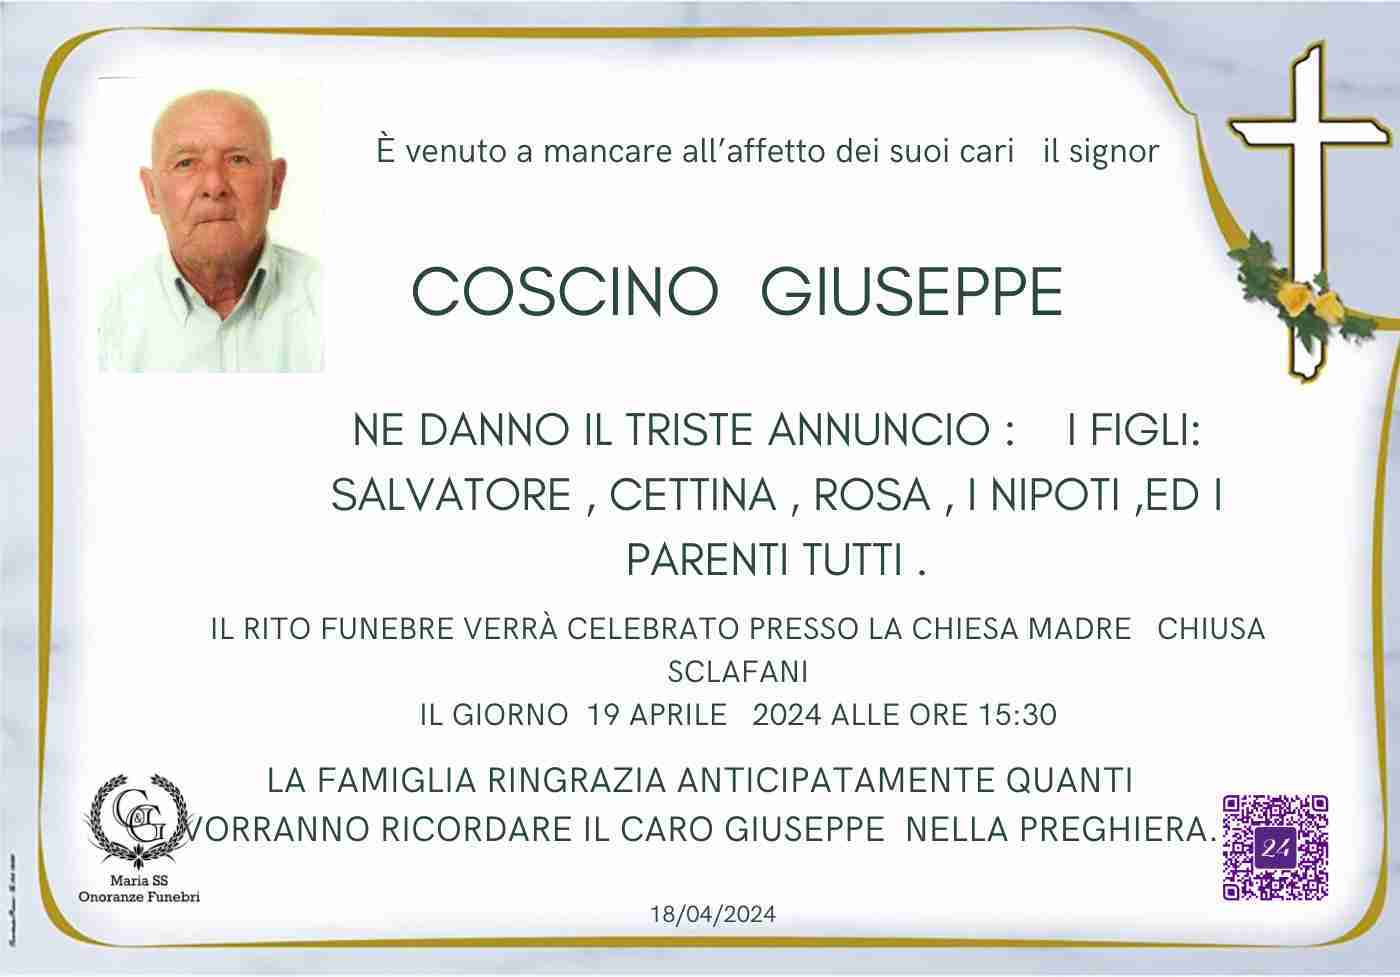 Giuseppe Coscino